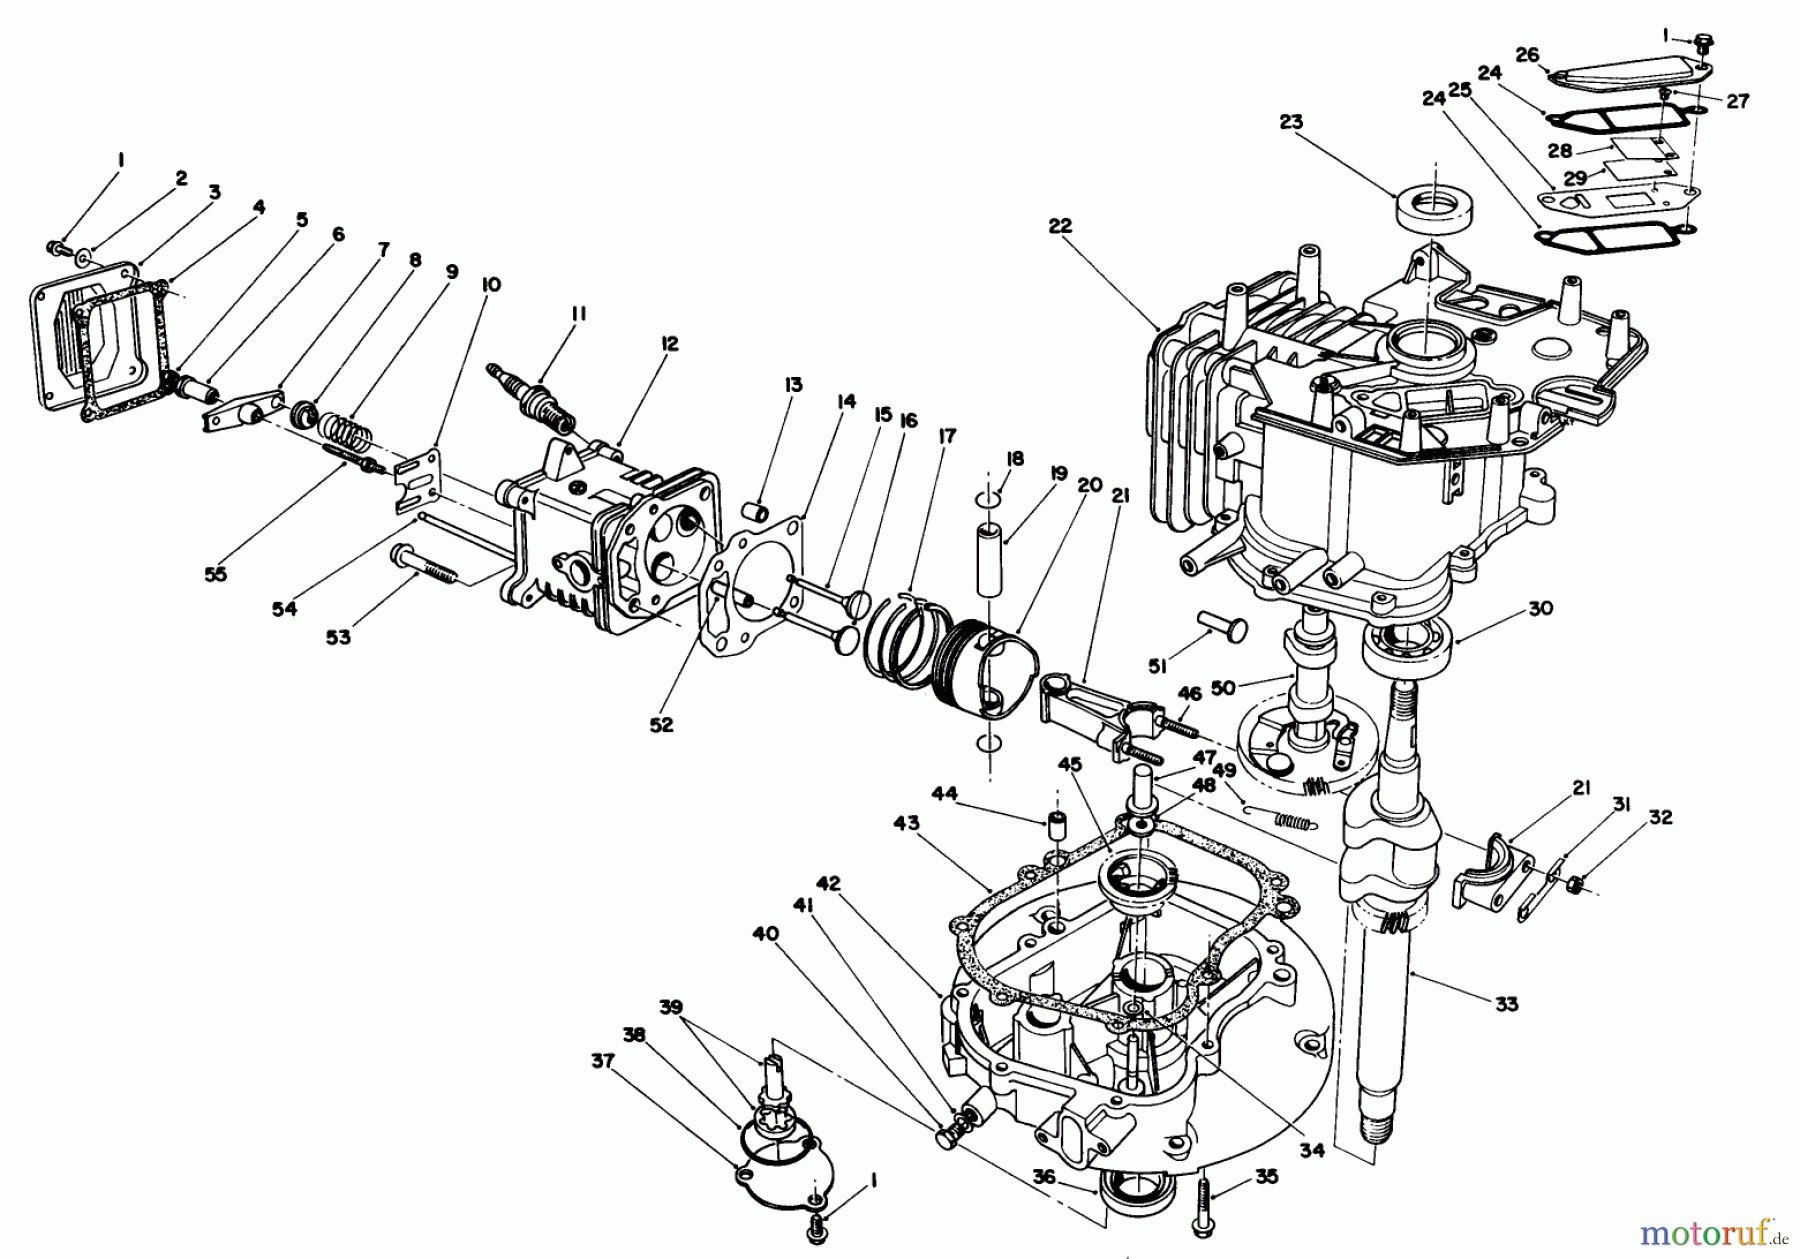  Toro Neu Mowers, Walk-Behind Seite 1 20622C - Toro Lawnmower, 1988 (8000001-8999999) ENGINE ASSEMBLY (MODEL NO. VMH7)